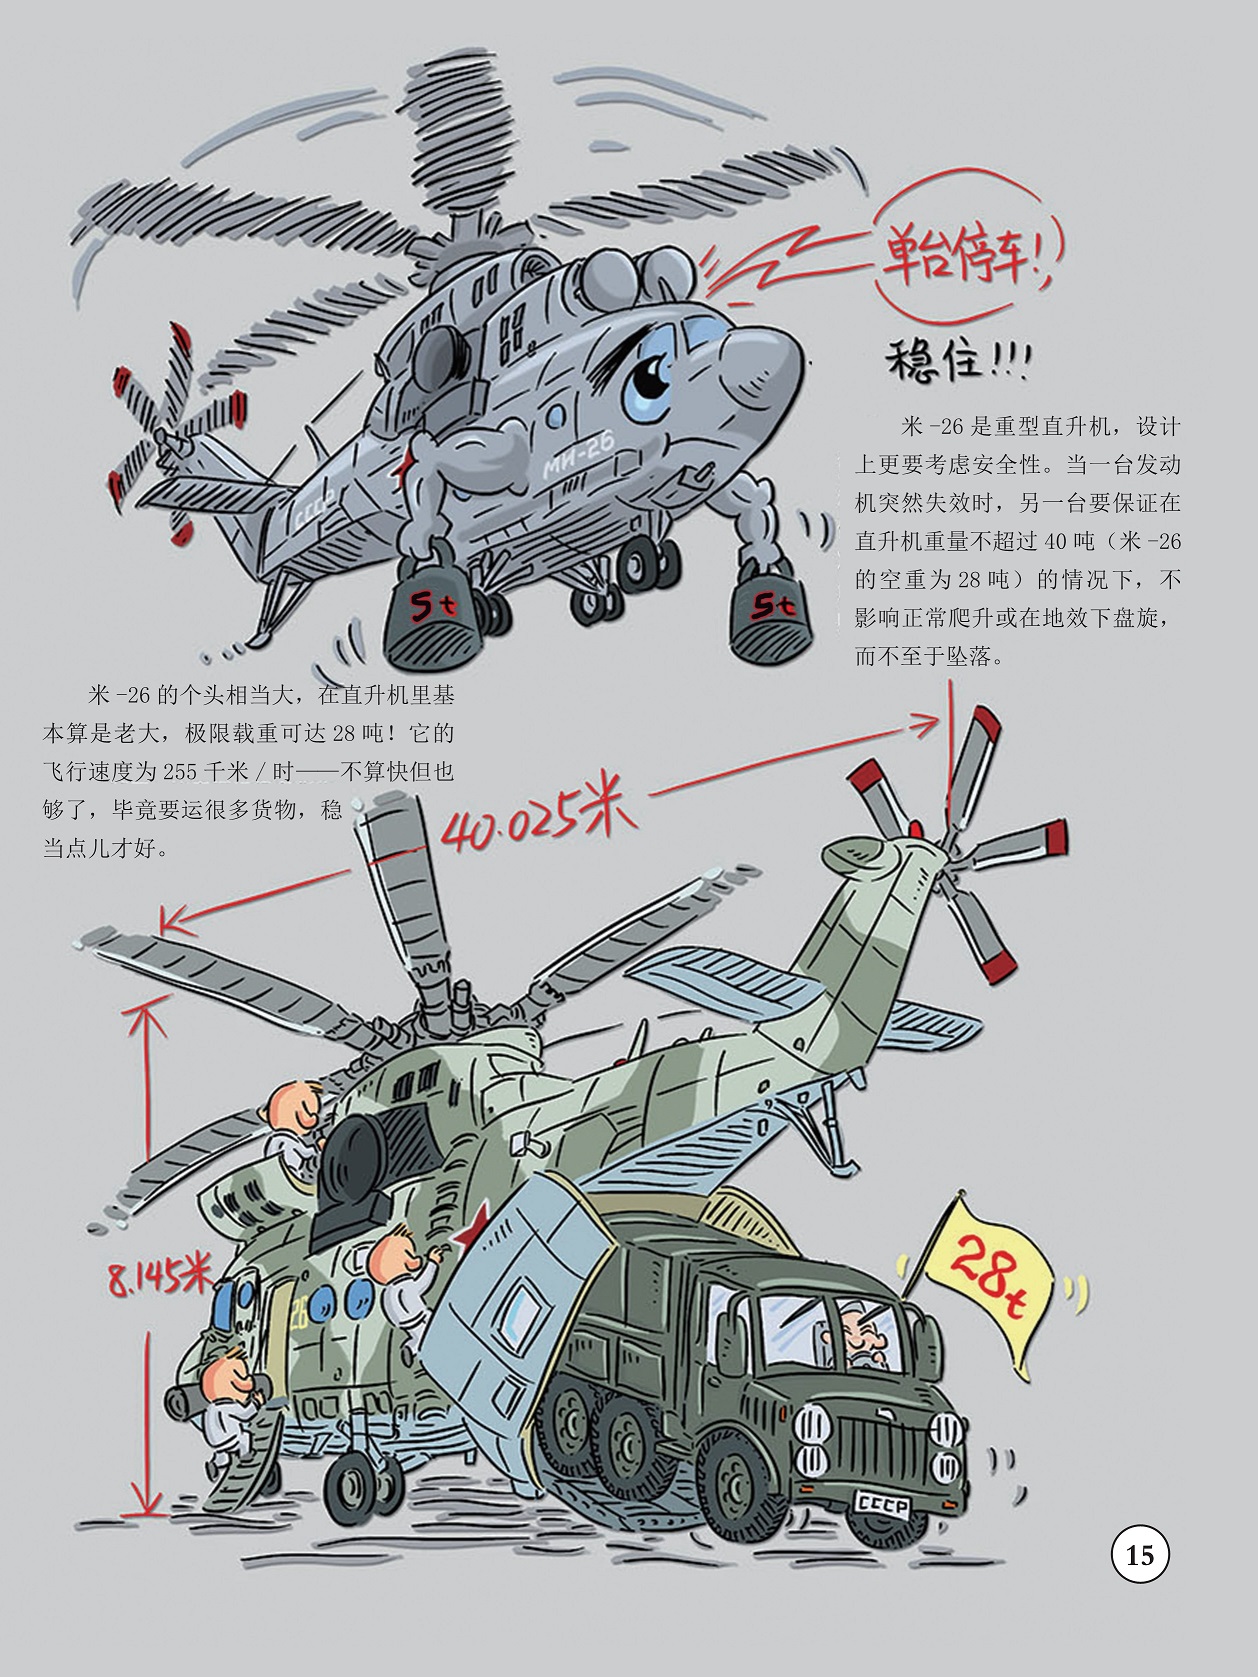 米-26是重型直升机,米-26极限载重可达28吨